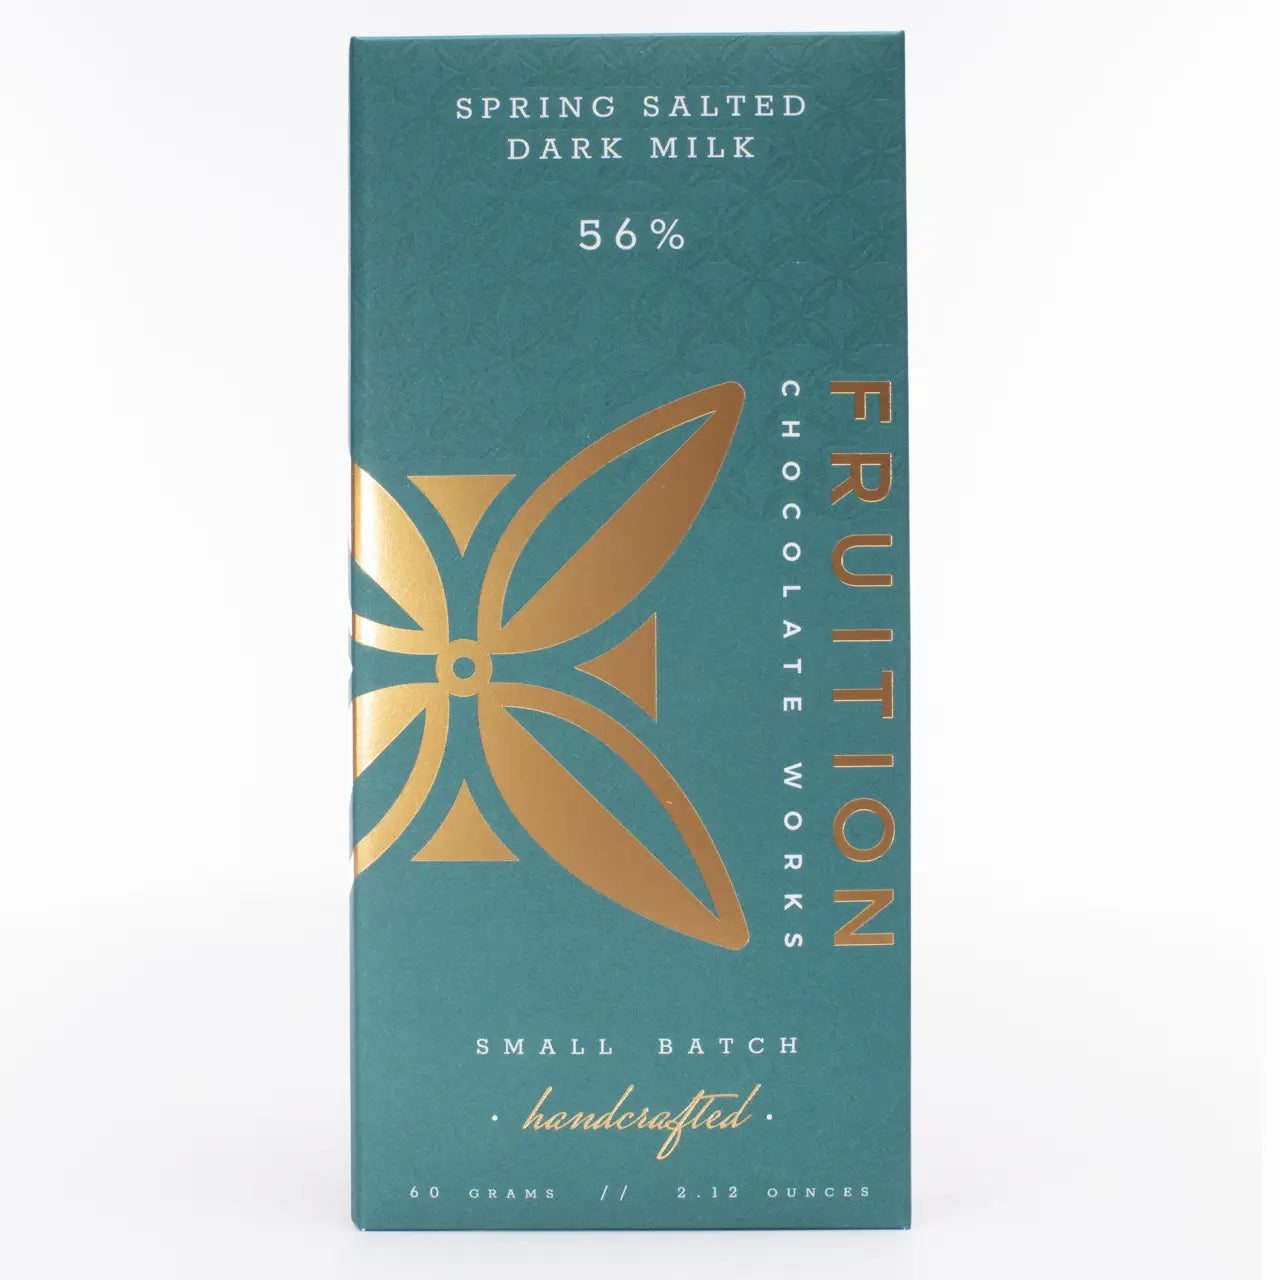 Spring Salted Dark Milk - 56%